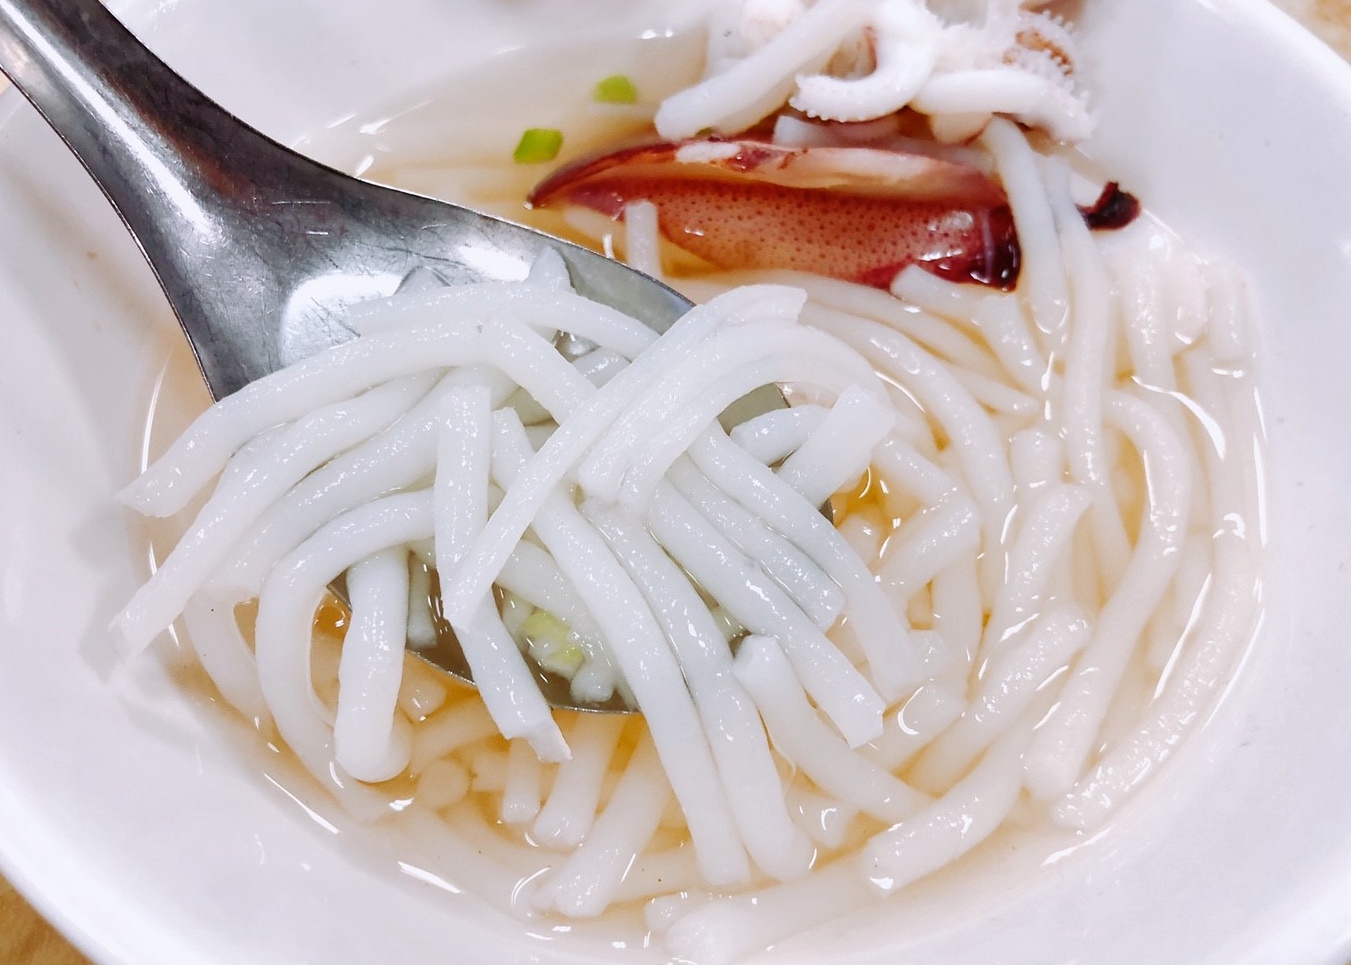 【台南 在地人傳統早餐】觀光客也來嚐鮮「阿堂鹹粥」、創立83年的「葉家小卷米粉」